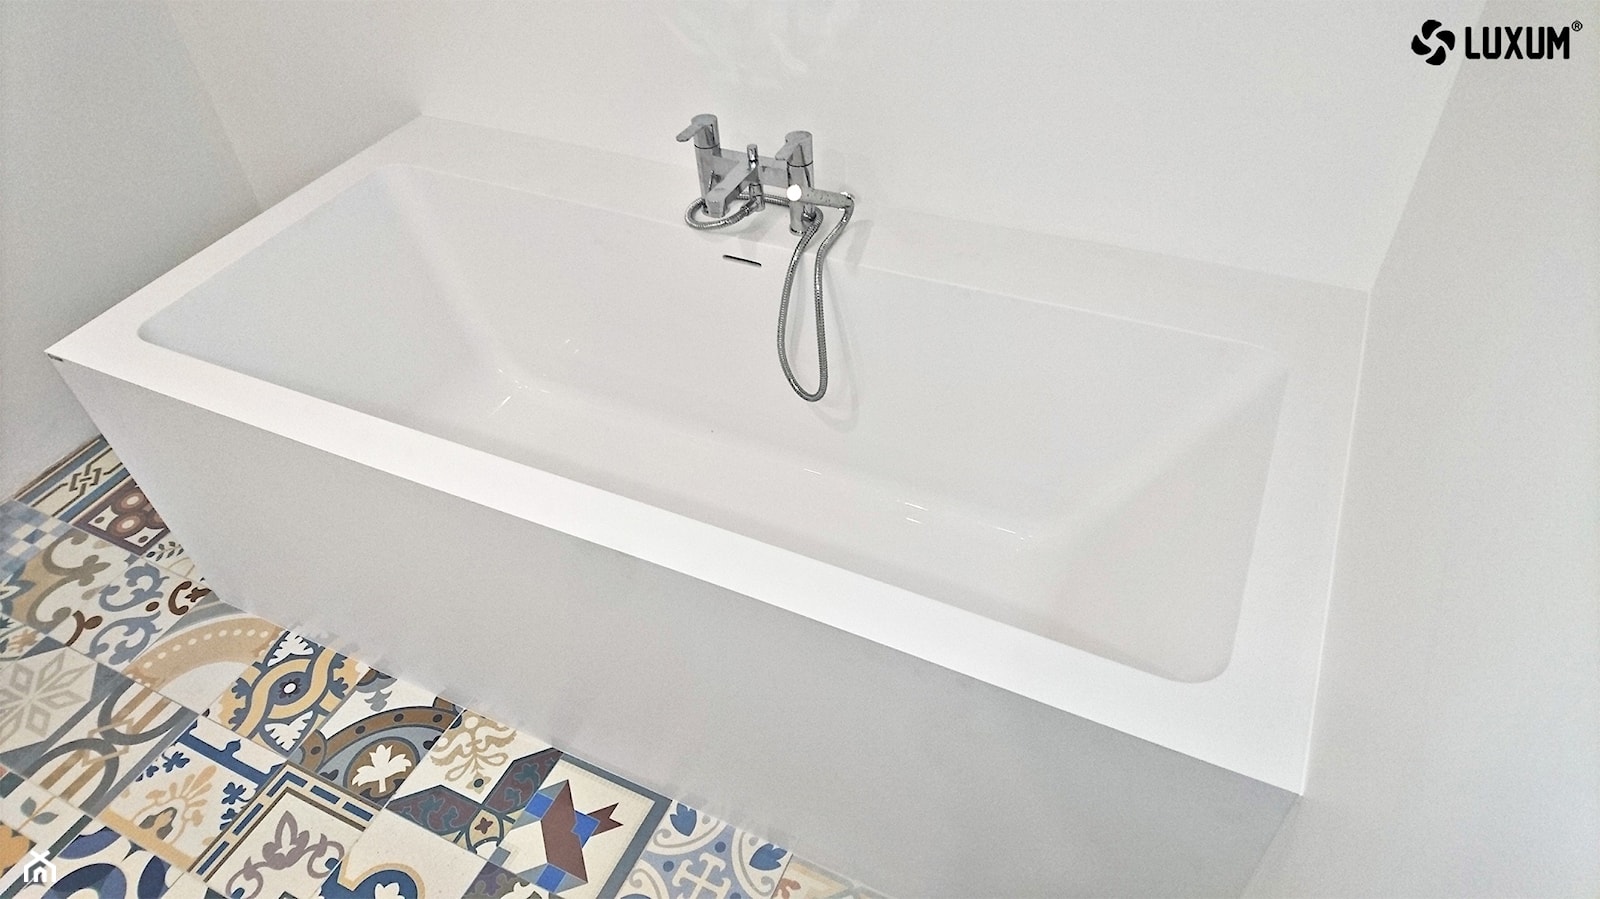 Nowoczesna, biała łazienka z mocnym akcentem kolorystycznym. - zdjęcie od Luxum - Homebook